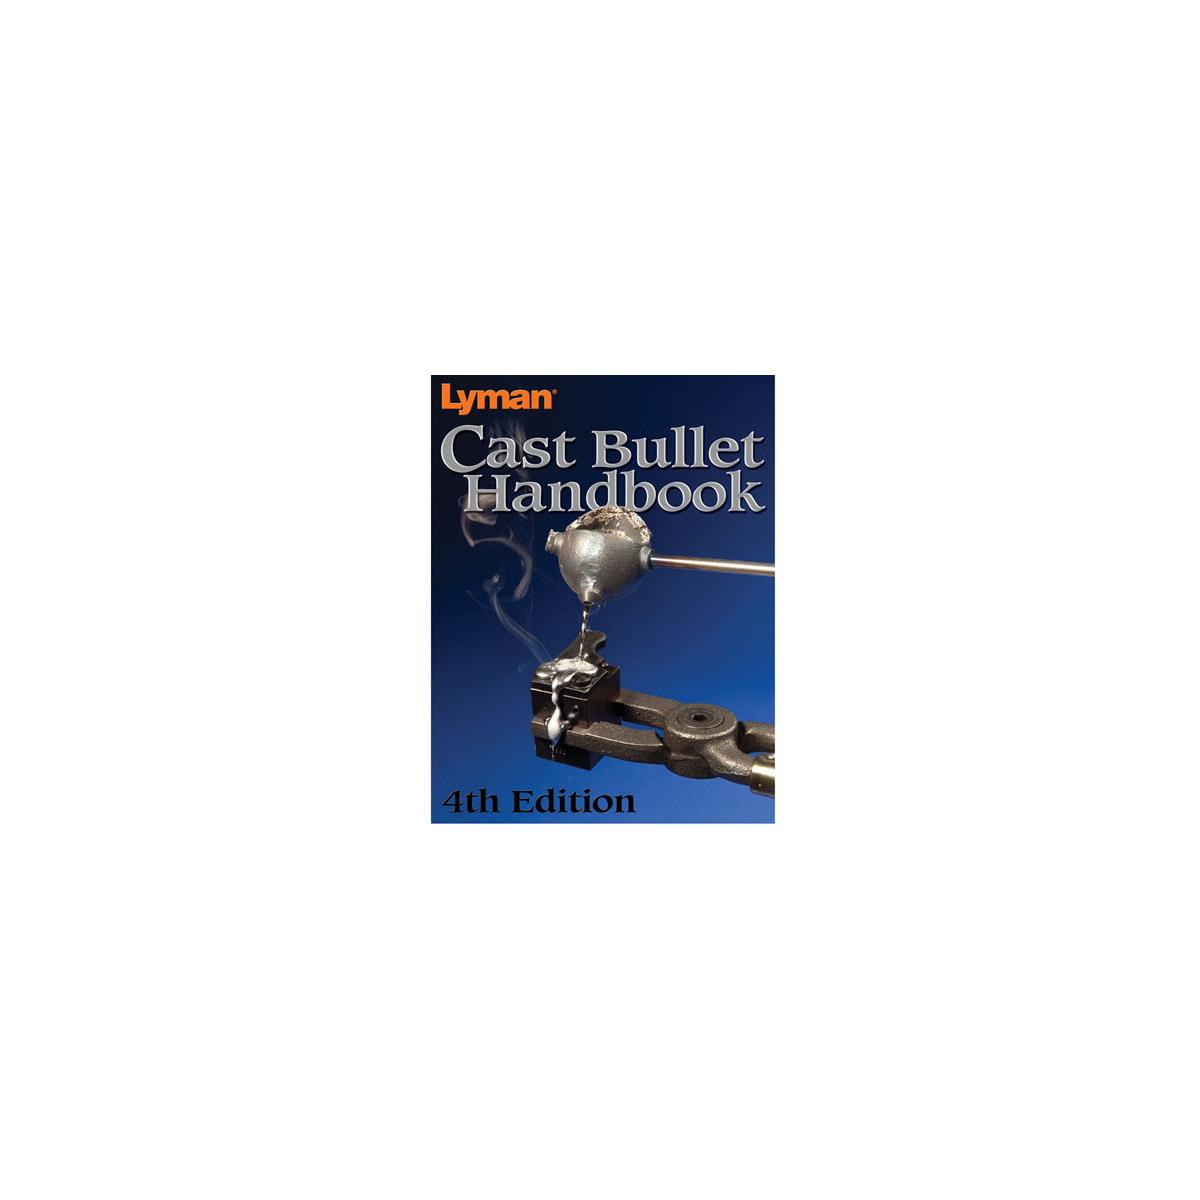 Image of Lyman Cast Bullet 4th Edition Handbook